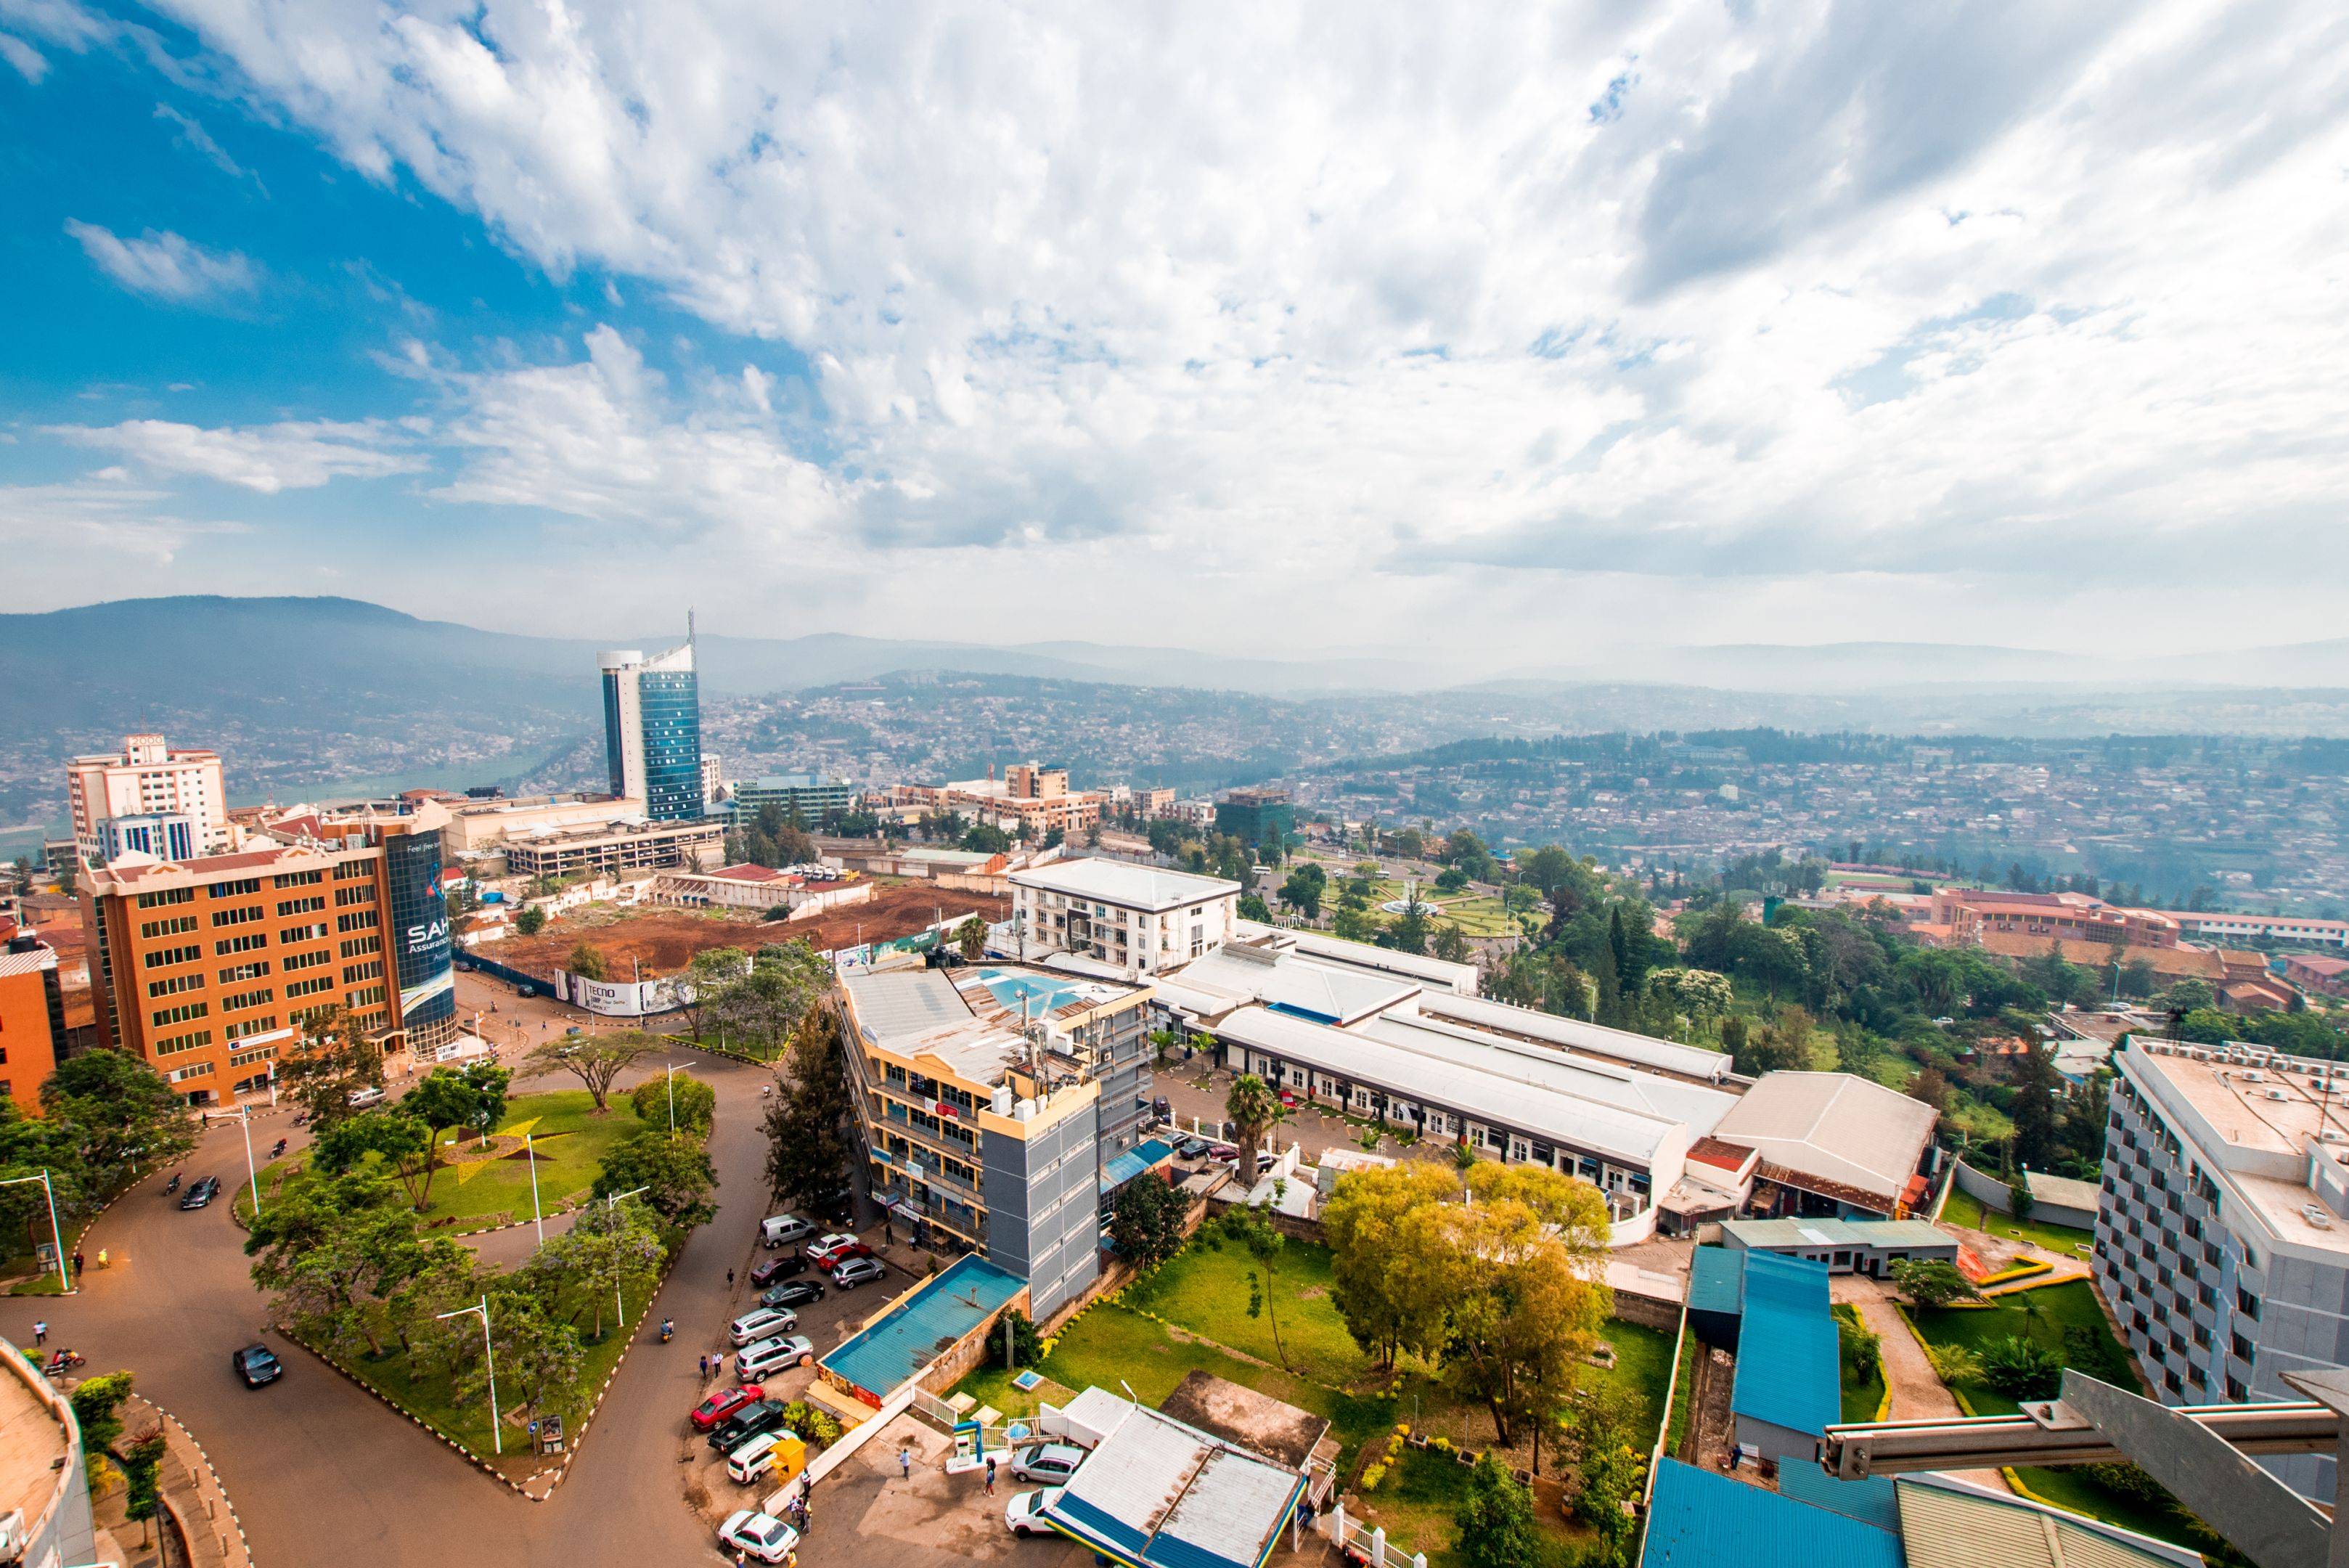 Kigali - Bwindi